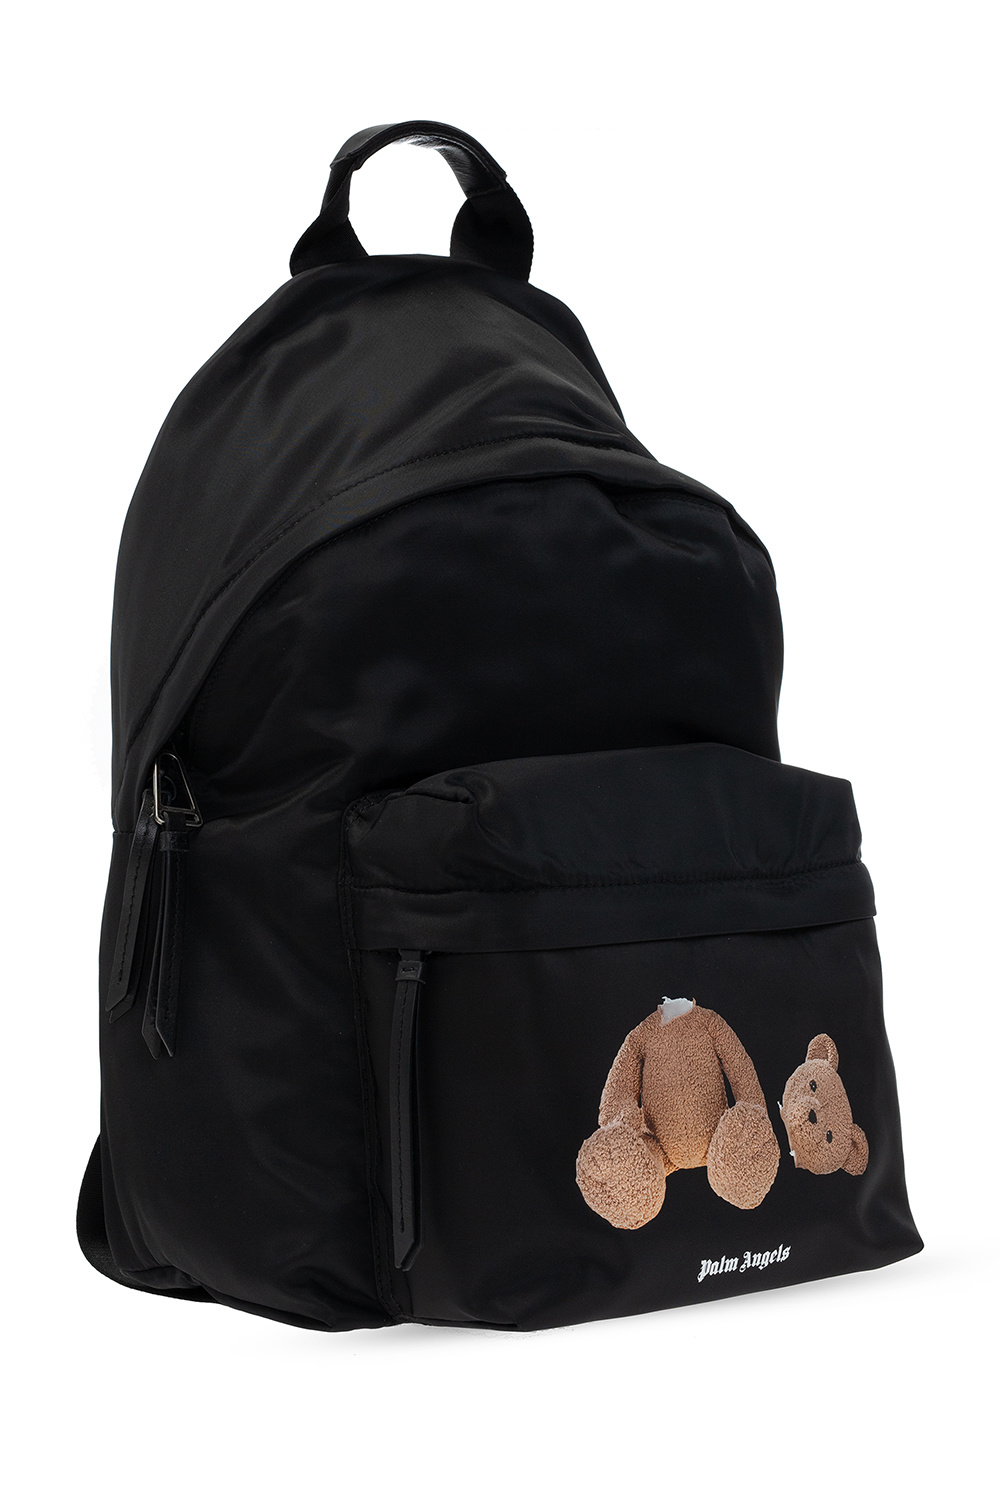 IetpShops Cyprus - pre-owned Speedy 30 tote bag - Black pinko love